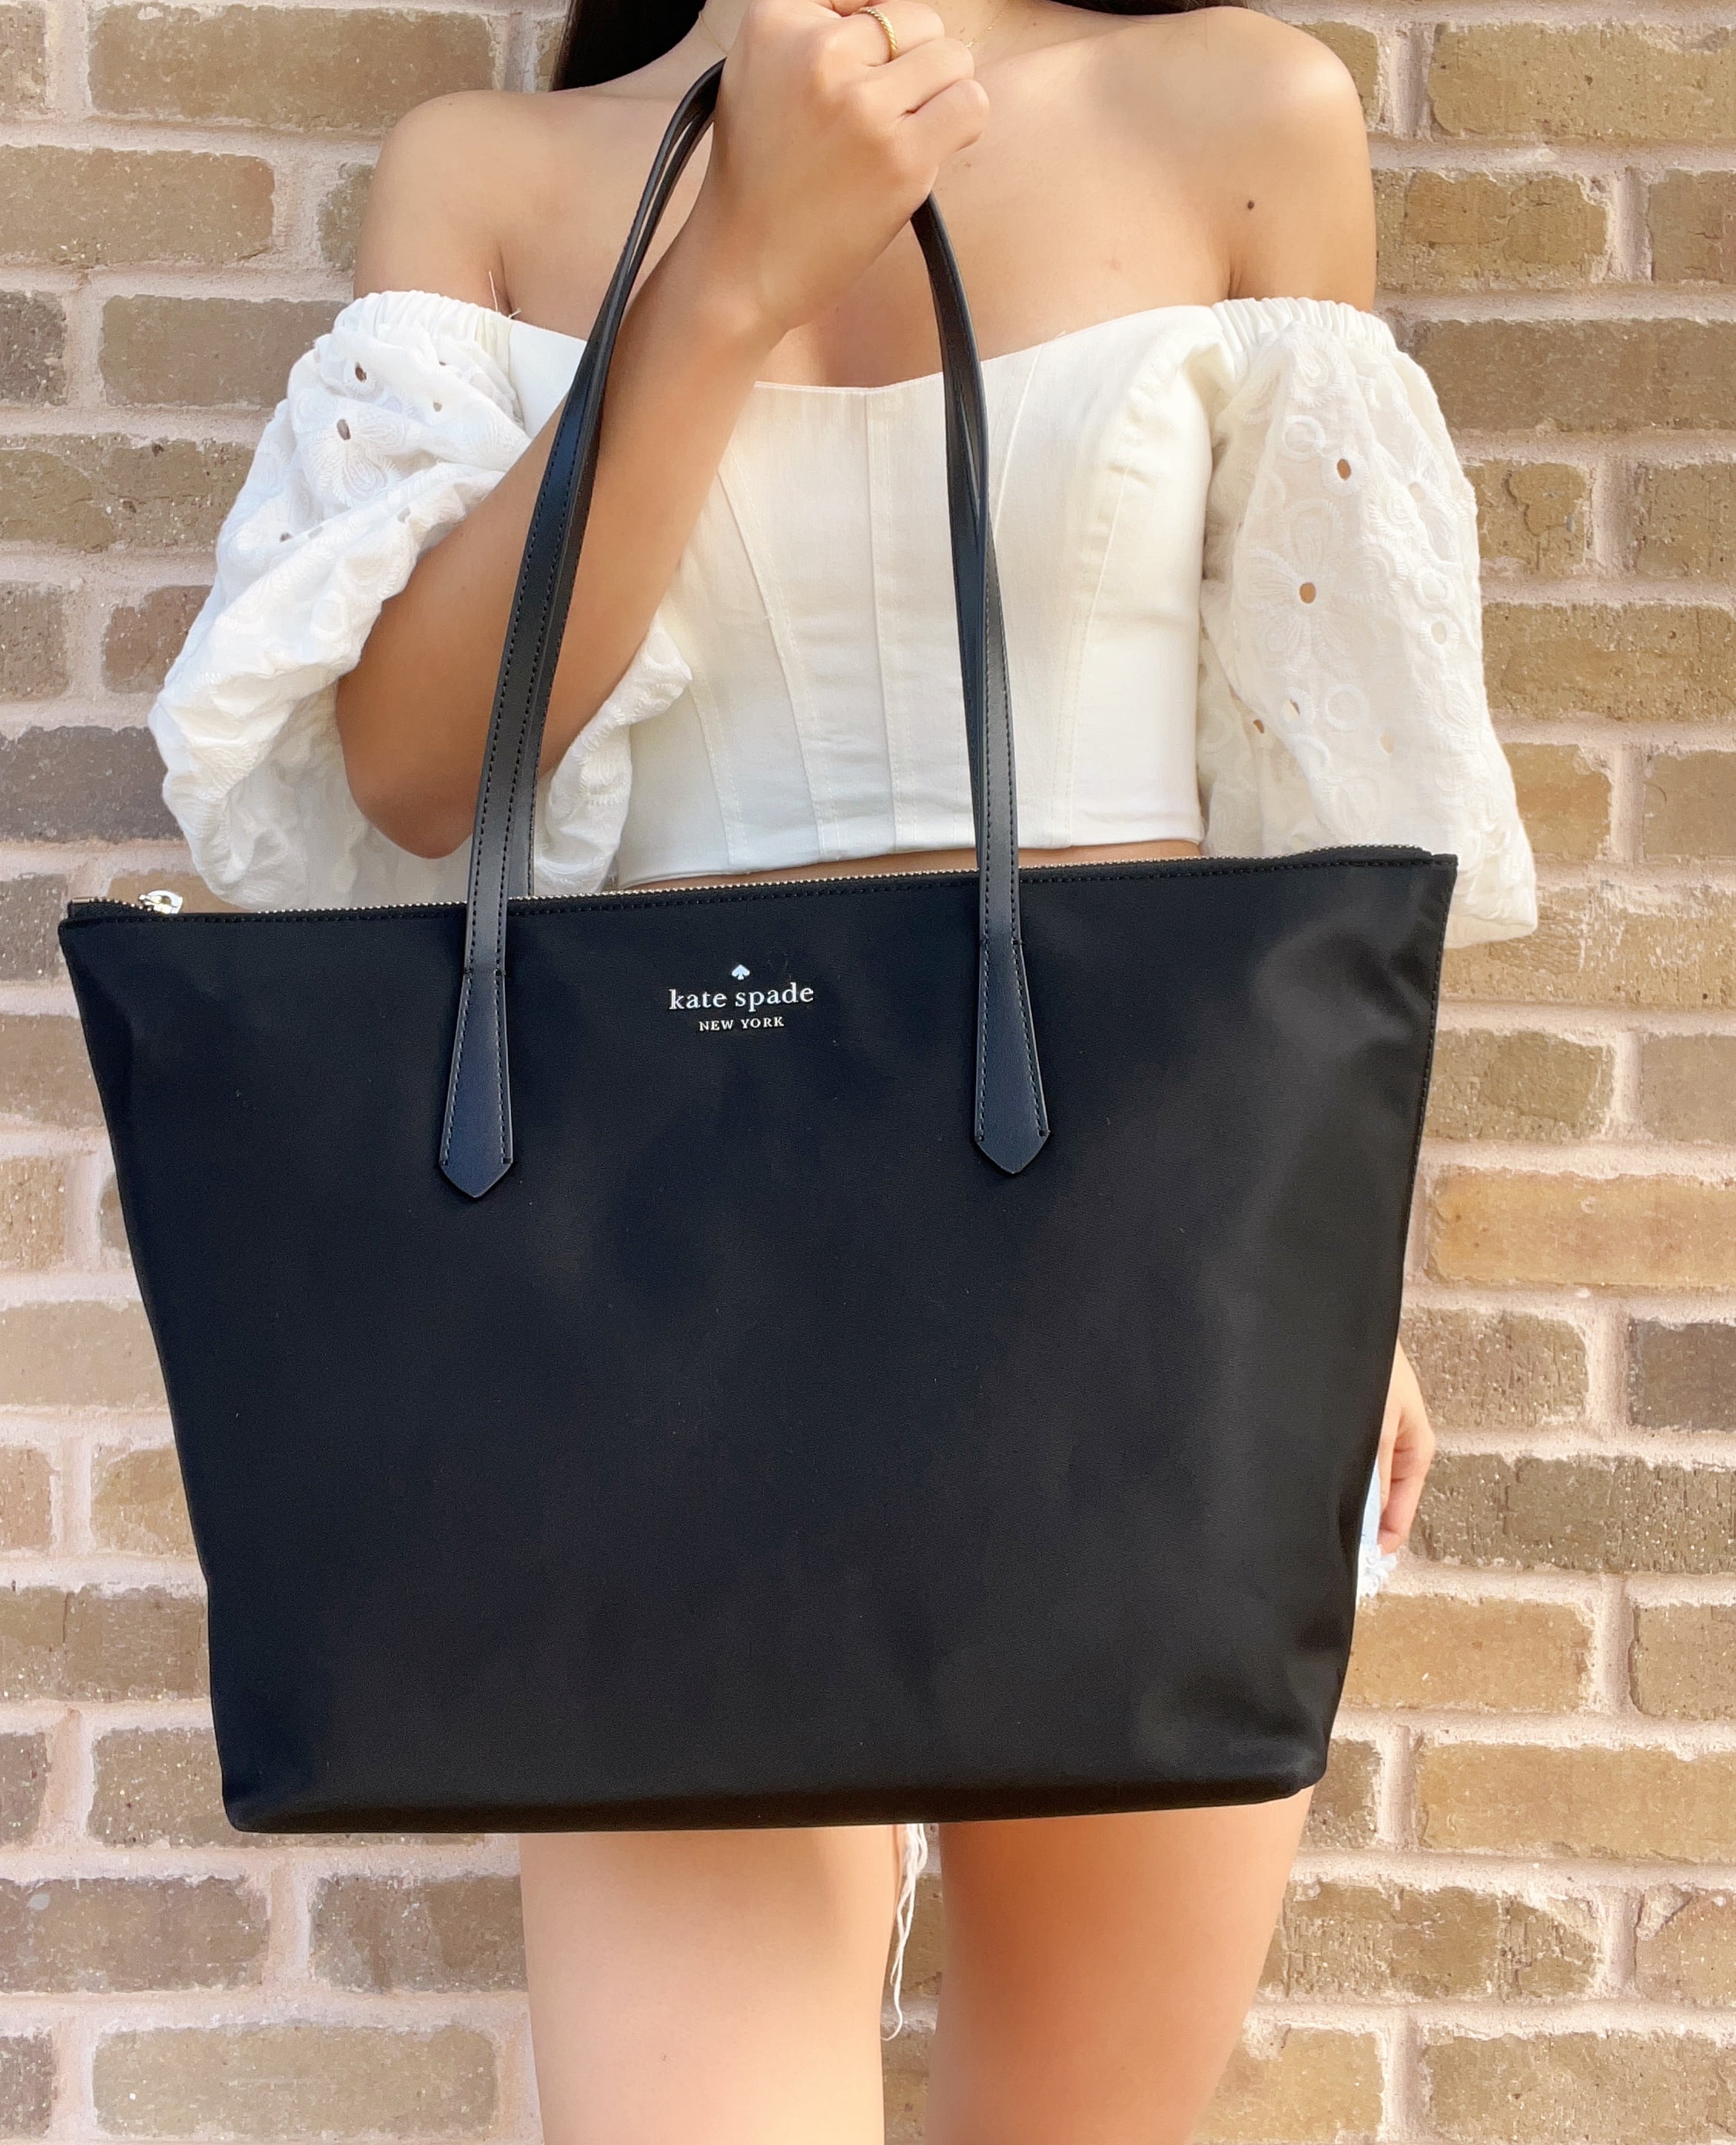 Kate Spade Large Black Nylon Tote Bag 